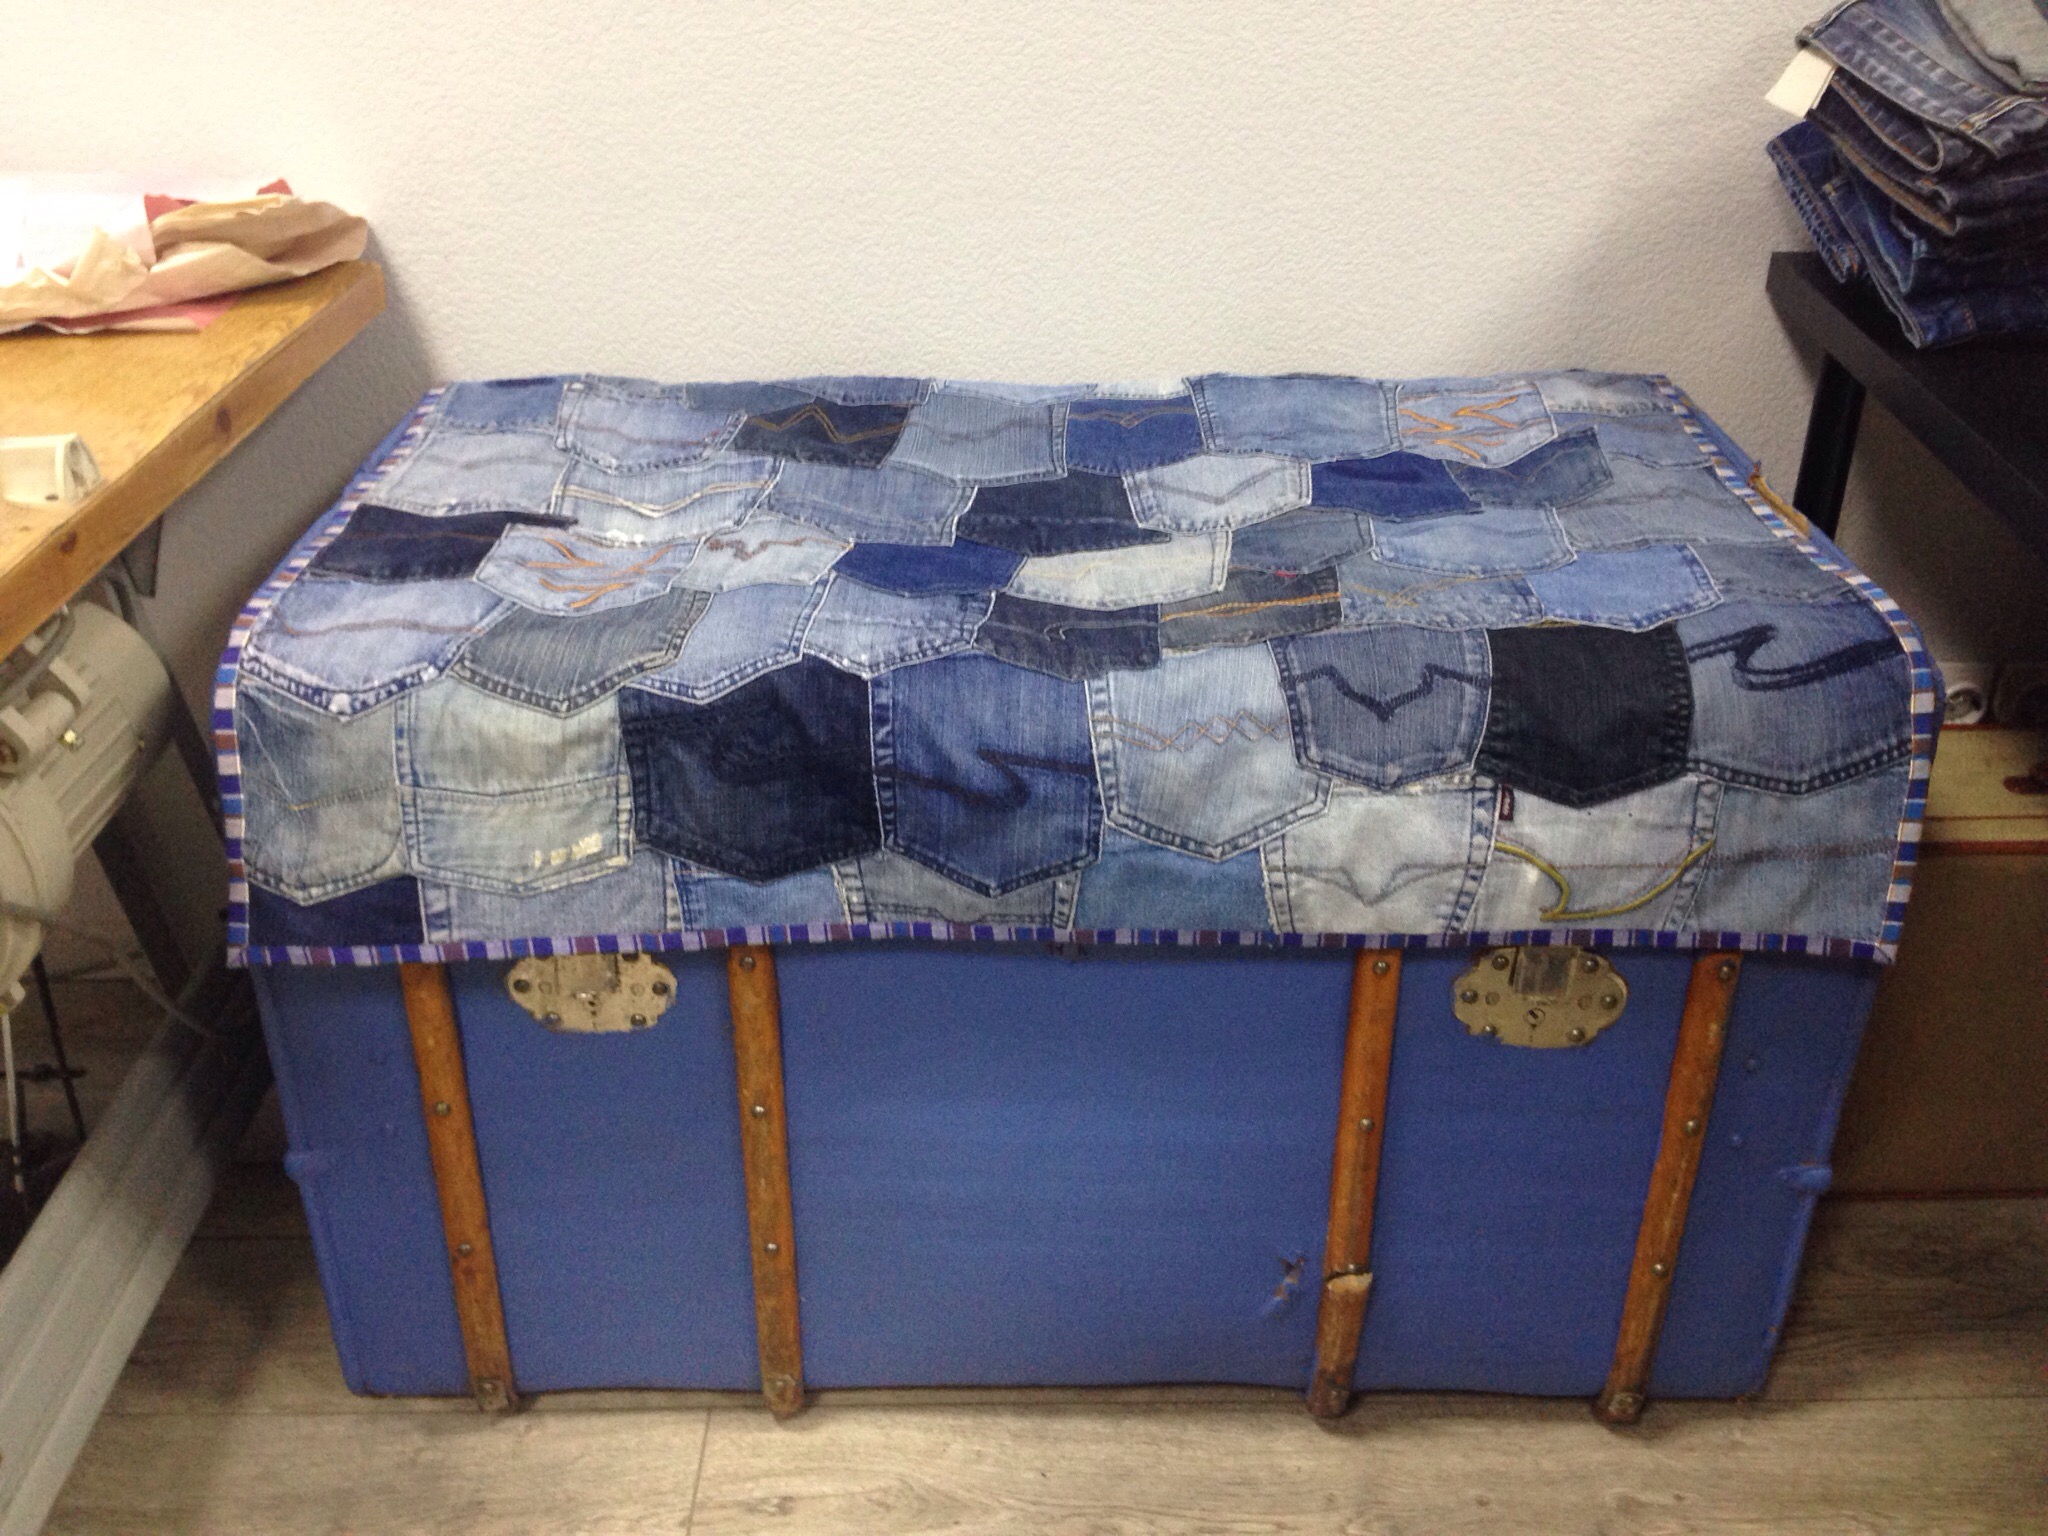 Голубой сундук из мастерской, которую мы разбирали, переехал в мастерскую наших партнёров - проекта "ДЖИЗНЬ и апсайклинг"